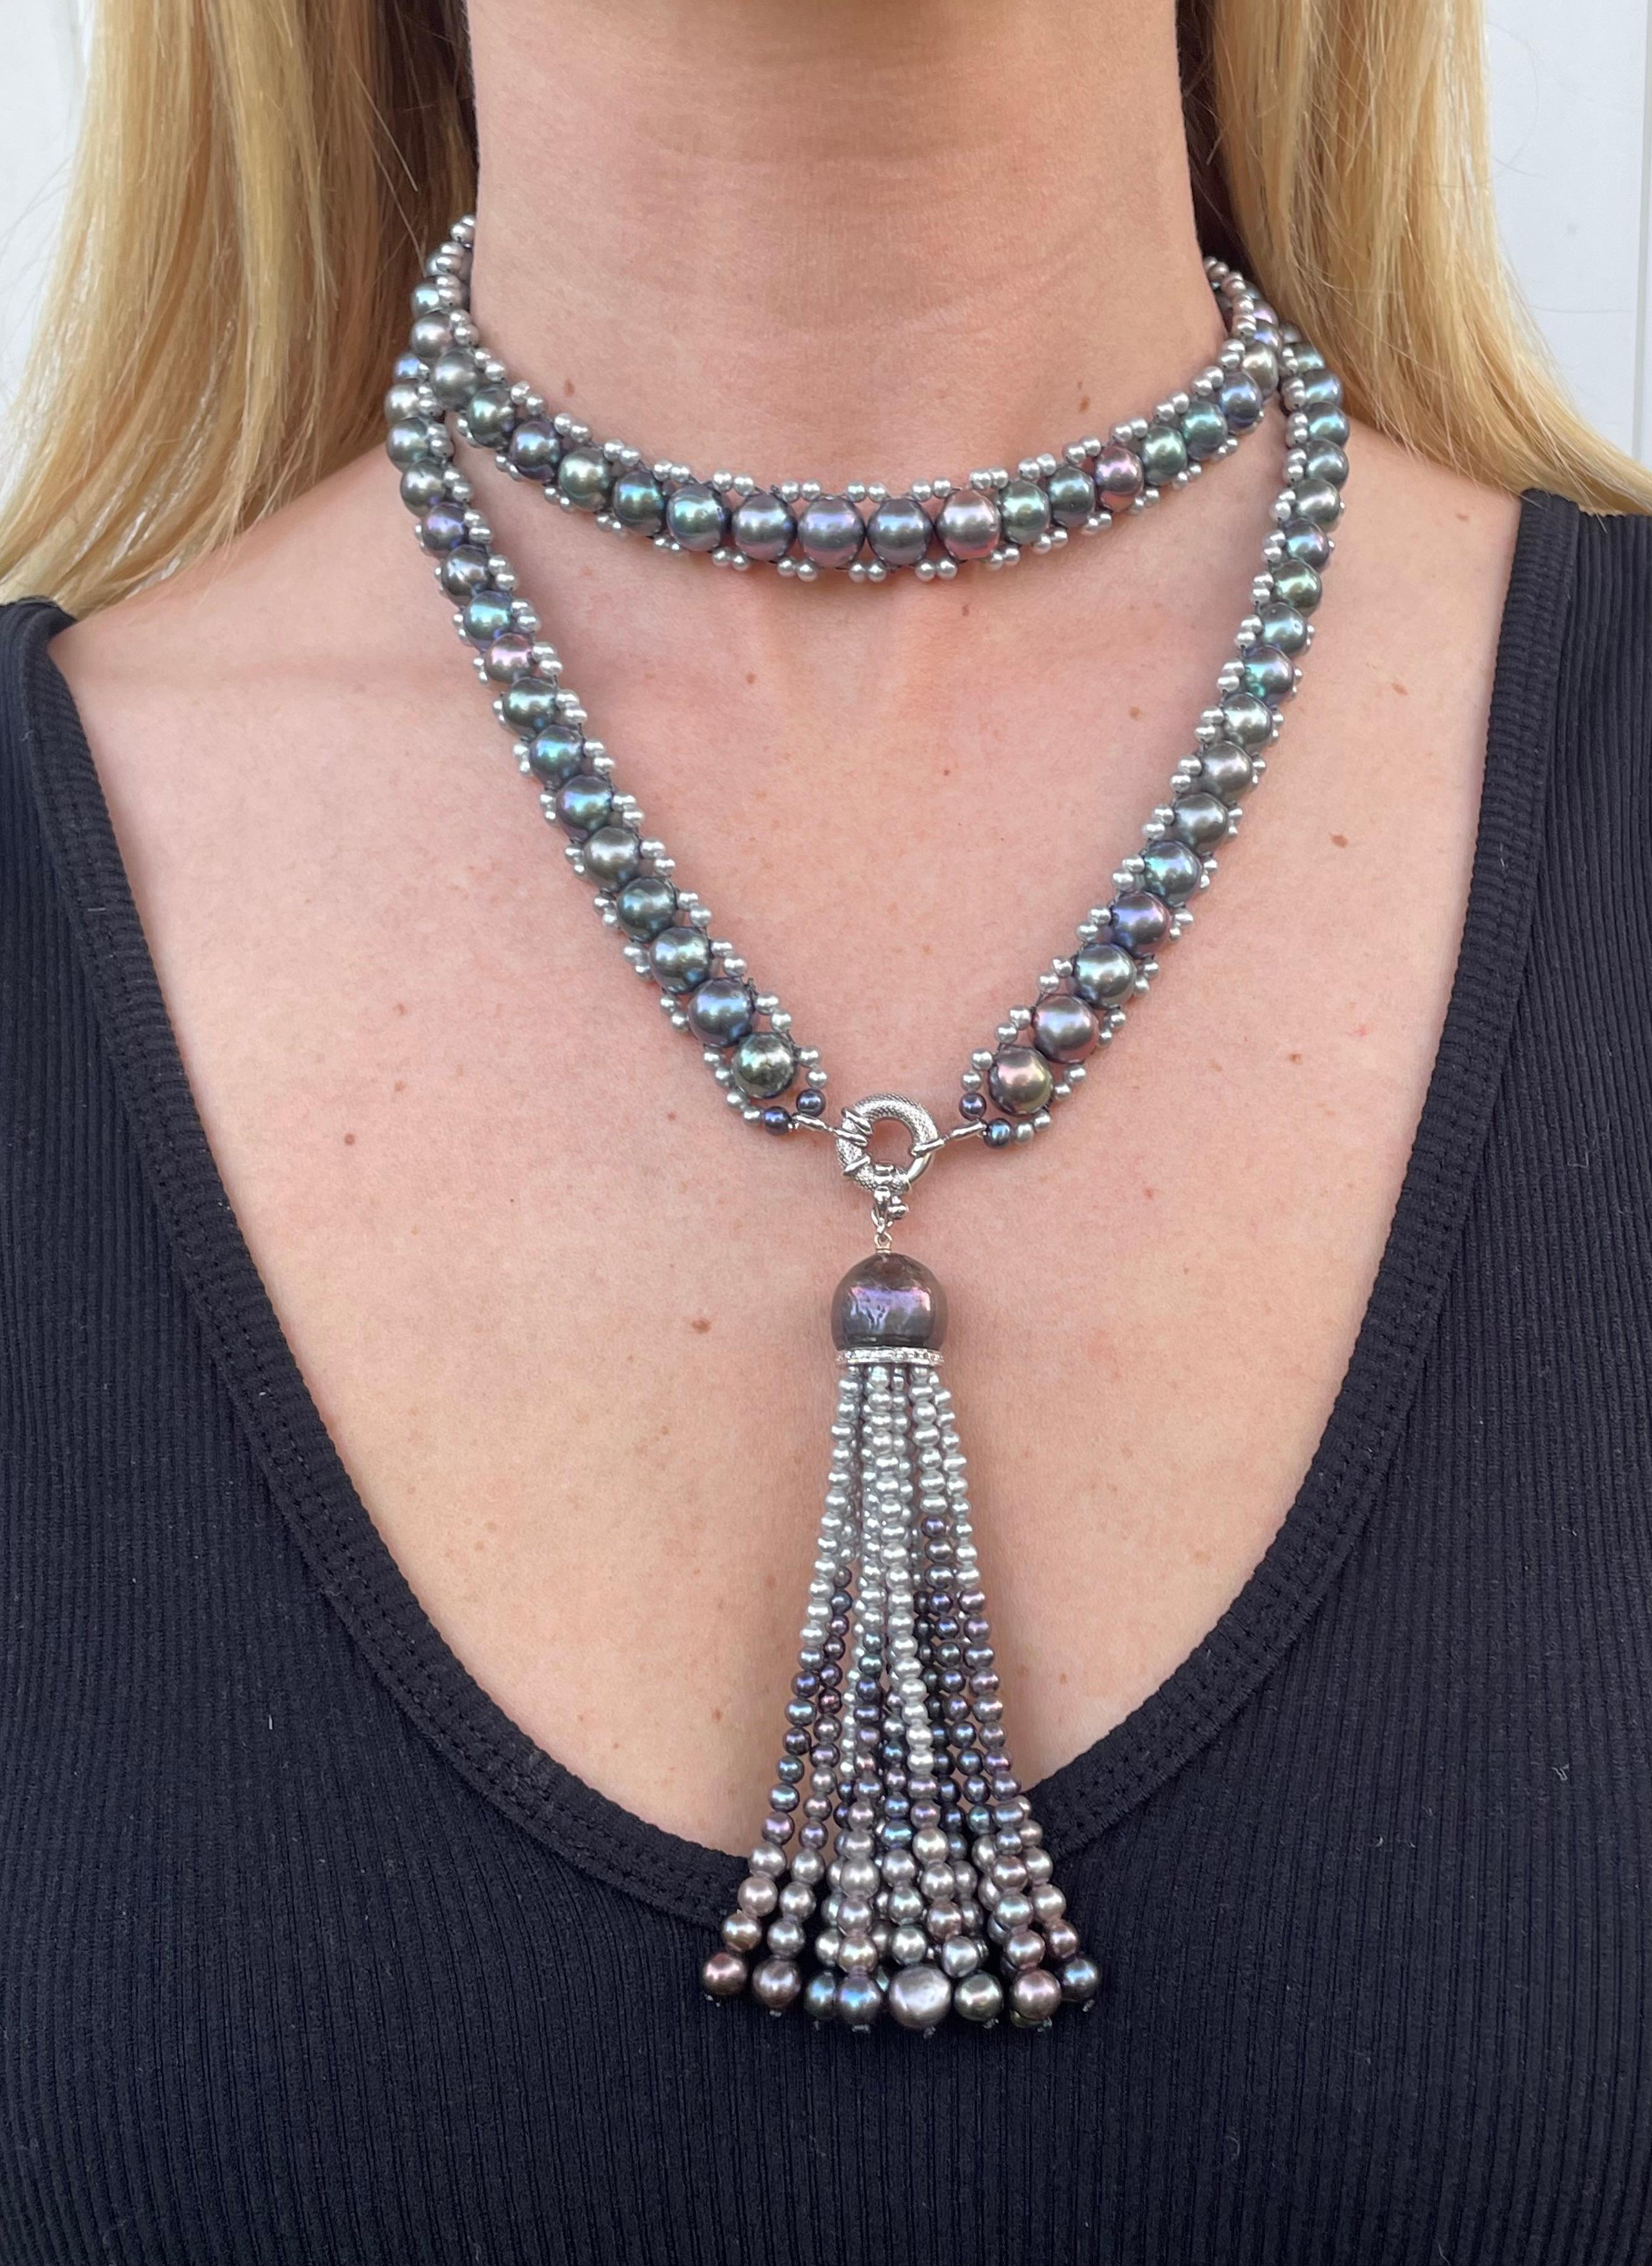 Nouvelle interprétation d'un classique de Marina J. Ce sautoir fermé est composé de perles grises et noires enfilées ensemble en forme de colonne. Les perles noires de cette pièce rayonnent d'un magnifique lustre irisé multicolore, donnant un aspect